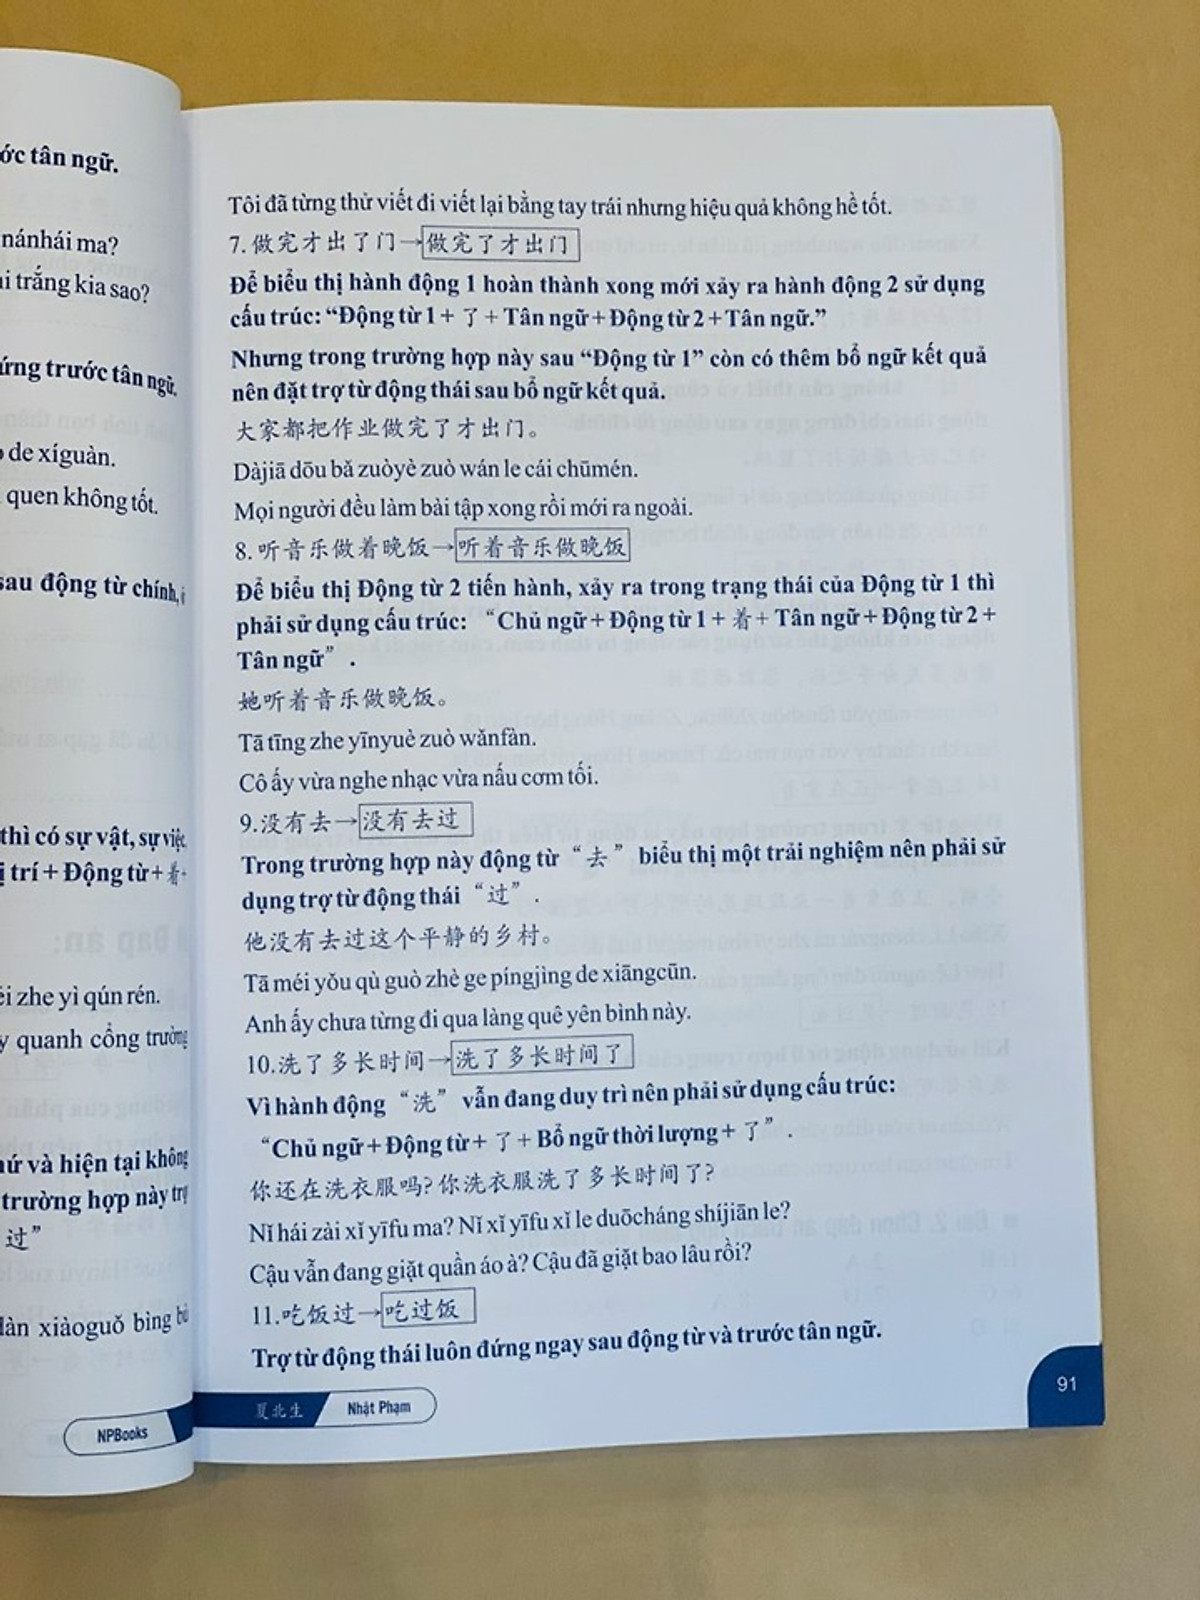 Sách - combo: Ngữ Pháp Hán Ngữ Thực Dụng +Bài tập luyện dịch tiếng Trung ứng dụng (Sơ -Trung cấp, Giao tiếp HSK có mp3 nghe, có đáp án)+DVD tài liệu